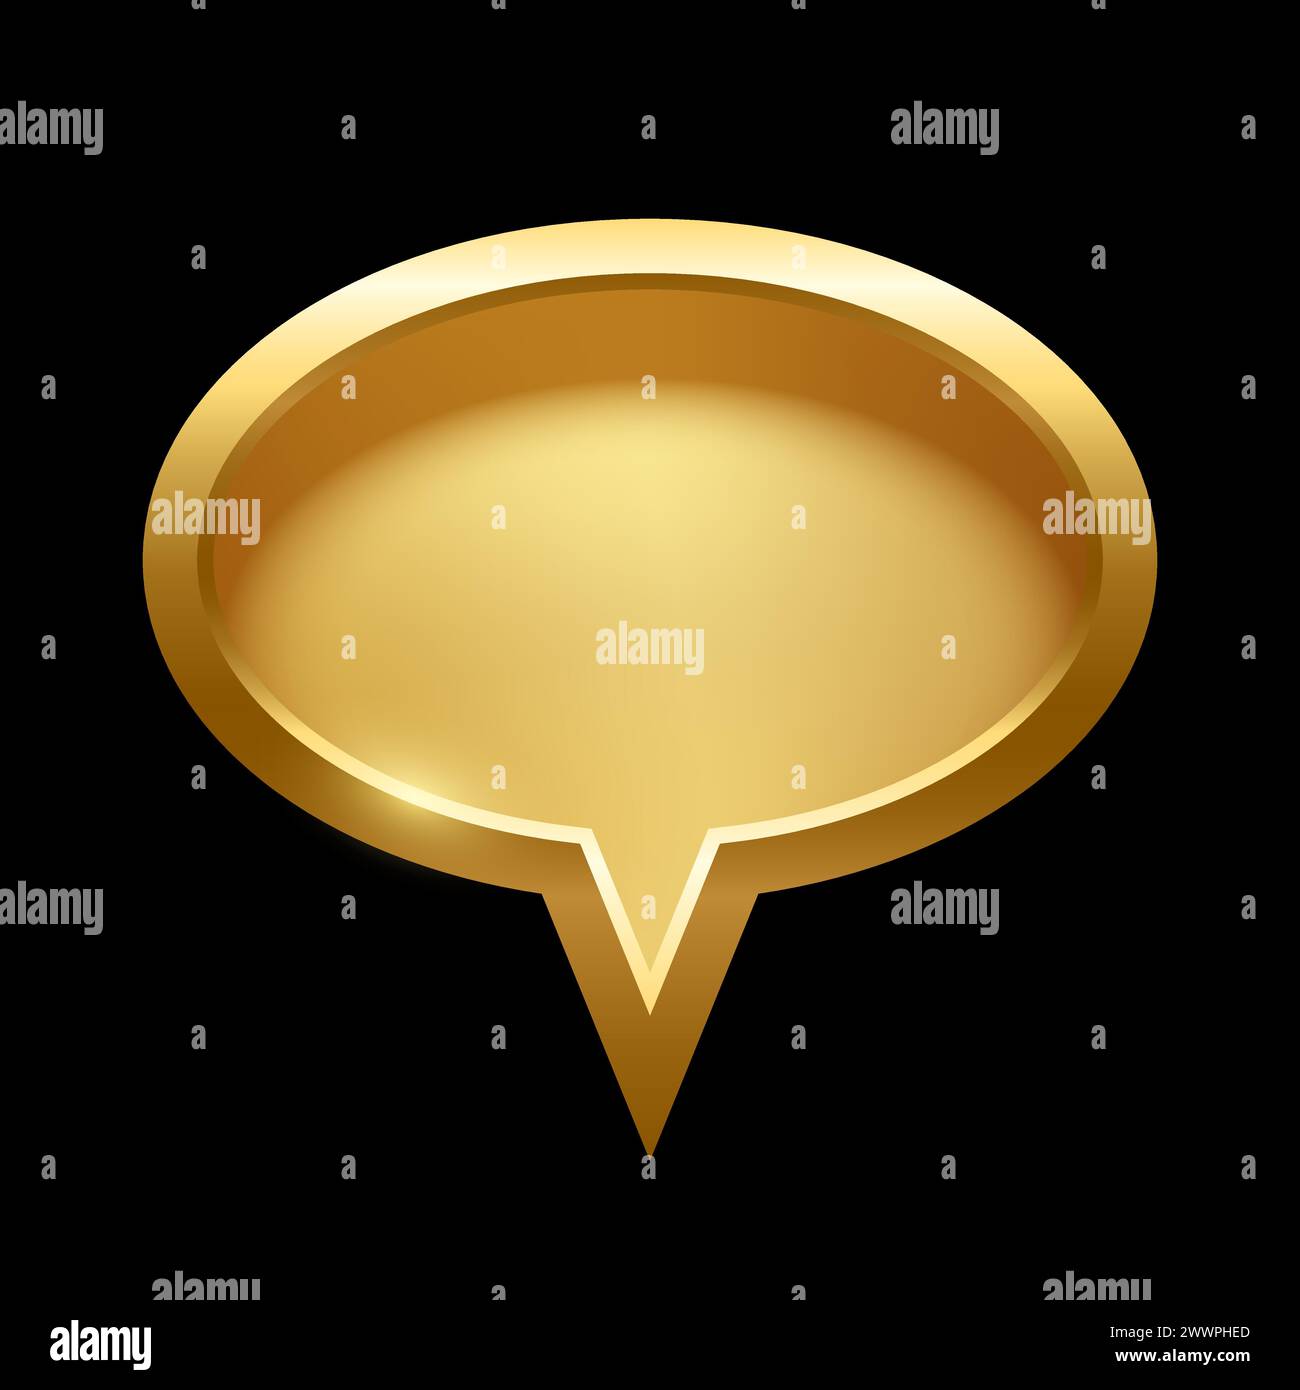 Goldene Ellipse-Sprechblase mit Rahmenvektor-Illustration. Goldenes, glänzendes, elegantes ovales Knopfdesign für leeres Emblem, Medaille oder Abzeichen, Lichteffekt Stock Vektor